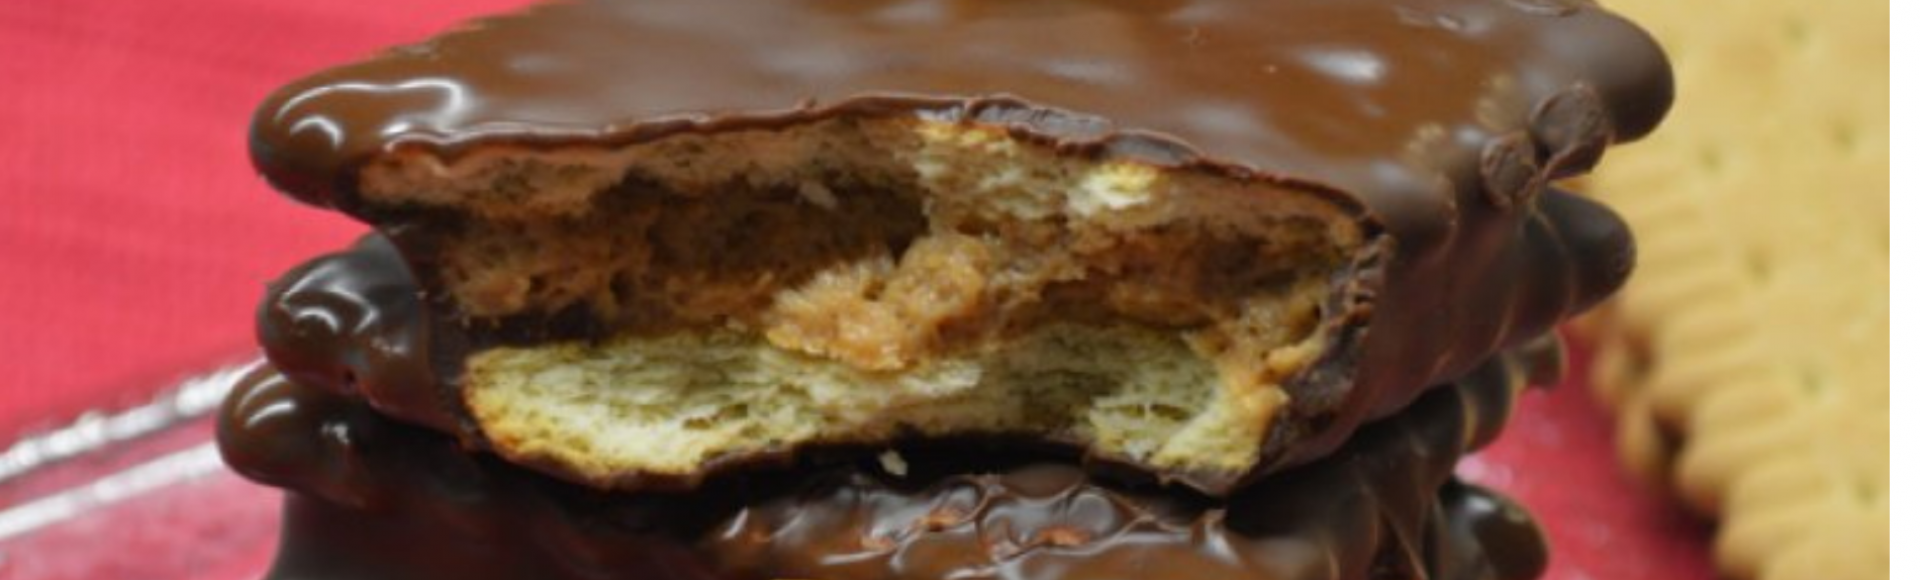 Μπισκότα γεμιστά με κρέμα πραλίνας & επικάλυψη σοκολάτας